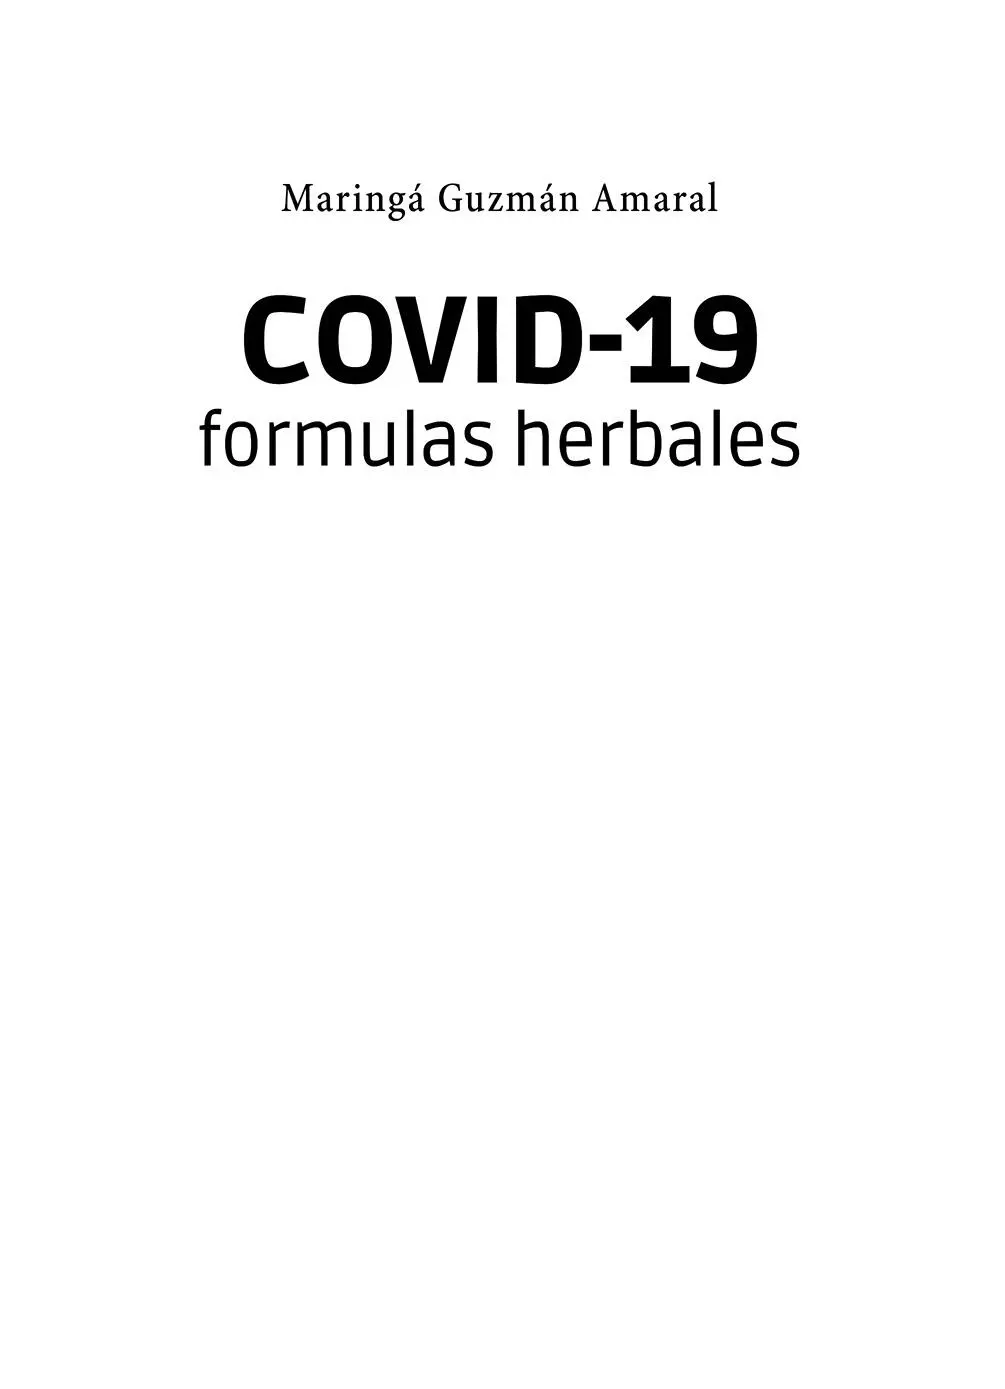 COVID19 Fórmulas herbales Maringá Guzmán Amaral Julio 2020 ISBN papel - фото 1